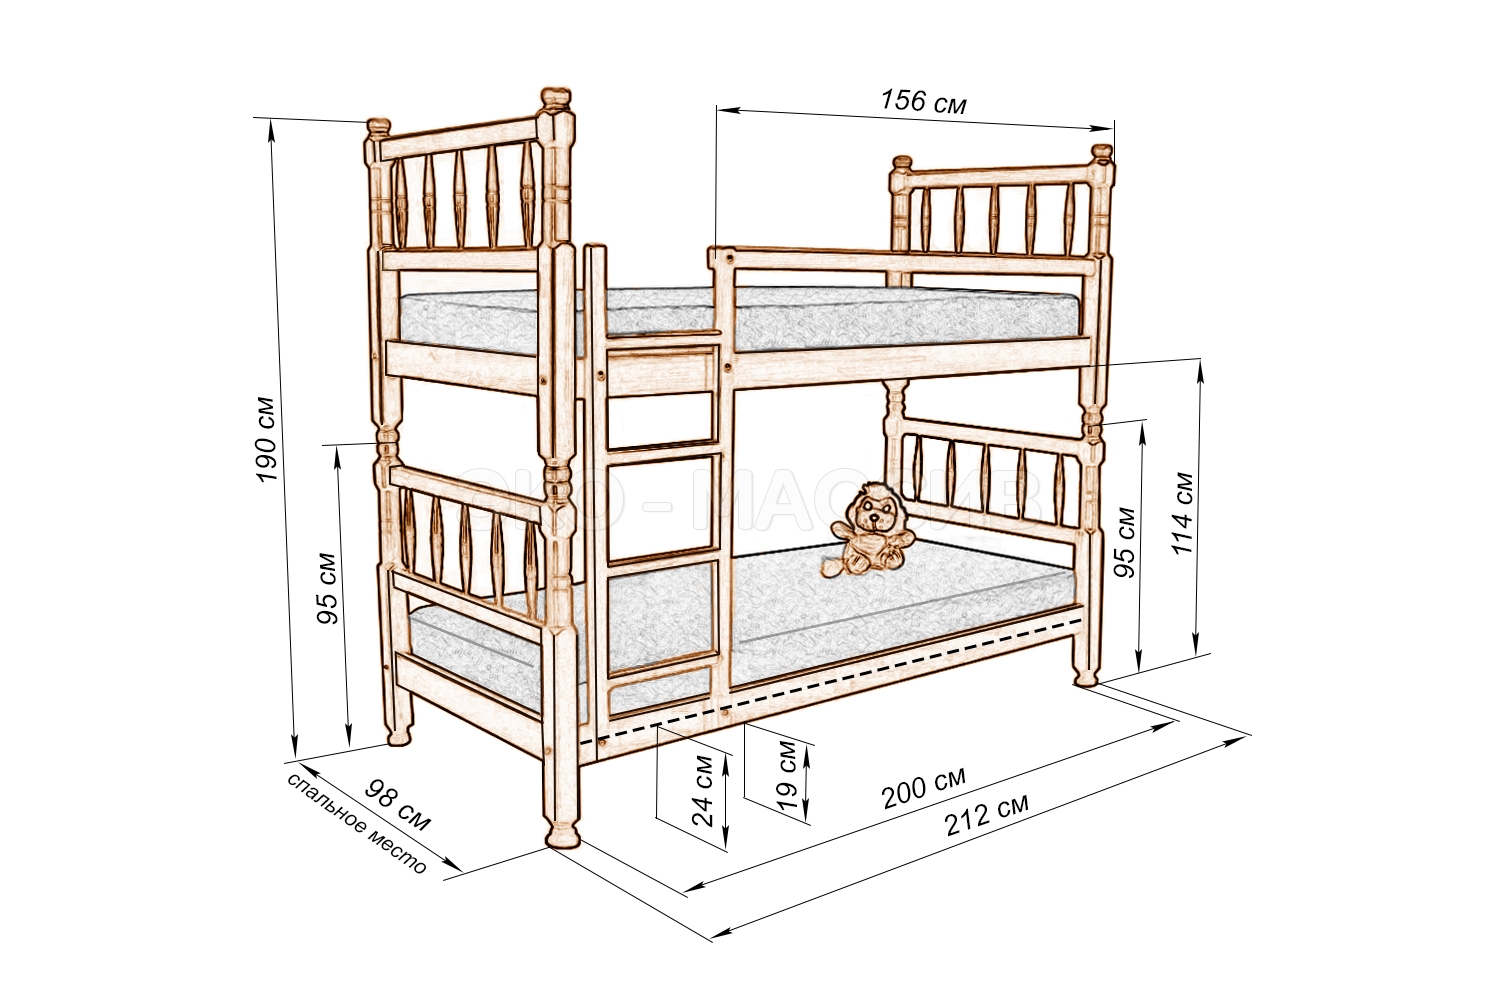 Детская двухъярусная кровать своими руками: чертежи, фото и пошаговая инструкция
детская двухъярусная кровать своими руками: чертежи, фото и пошаговая инструкция